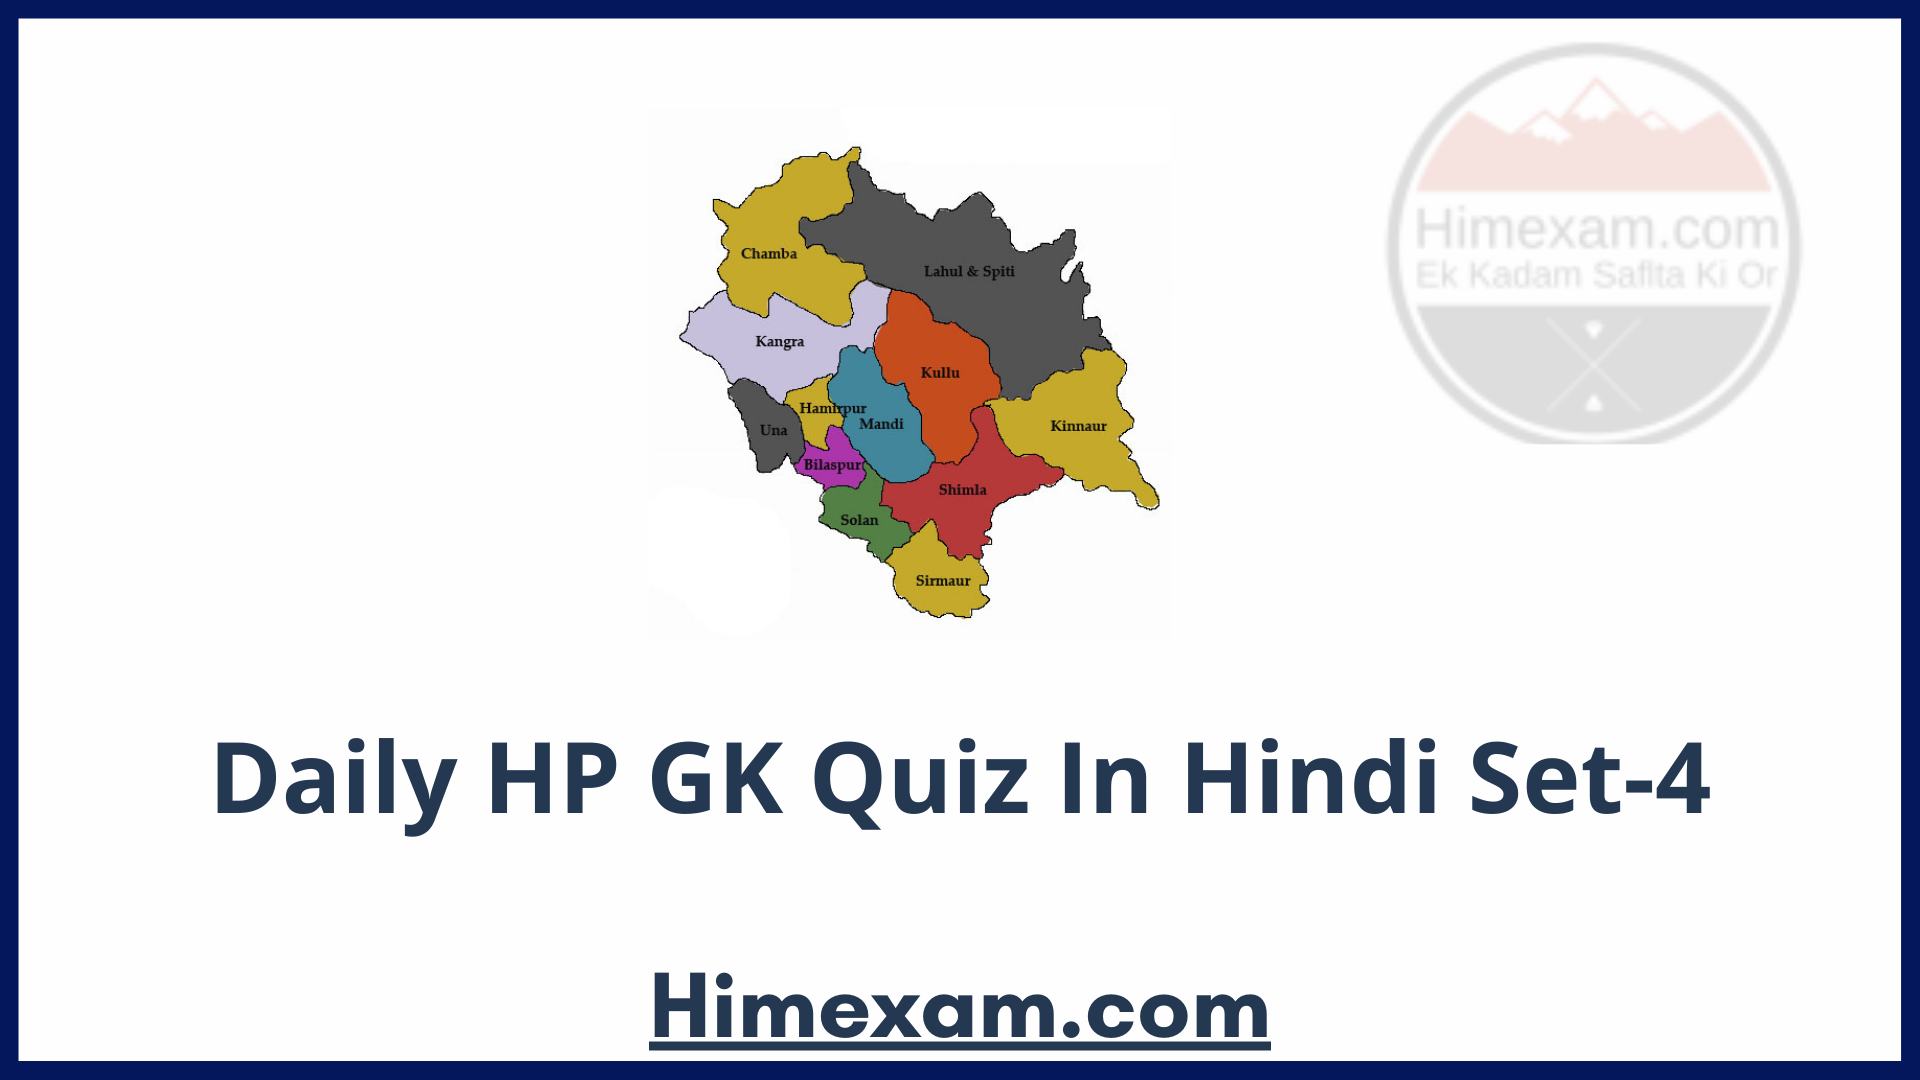 Daily HP GK Quiz In Hindi Set-4